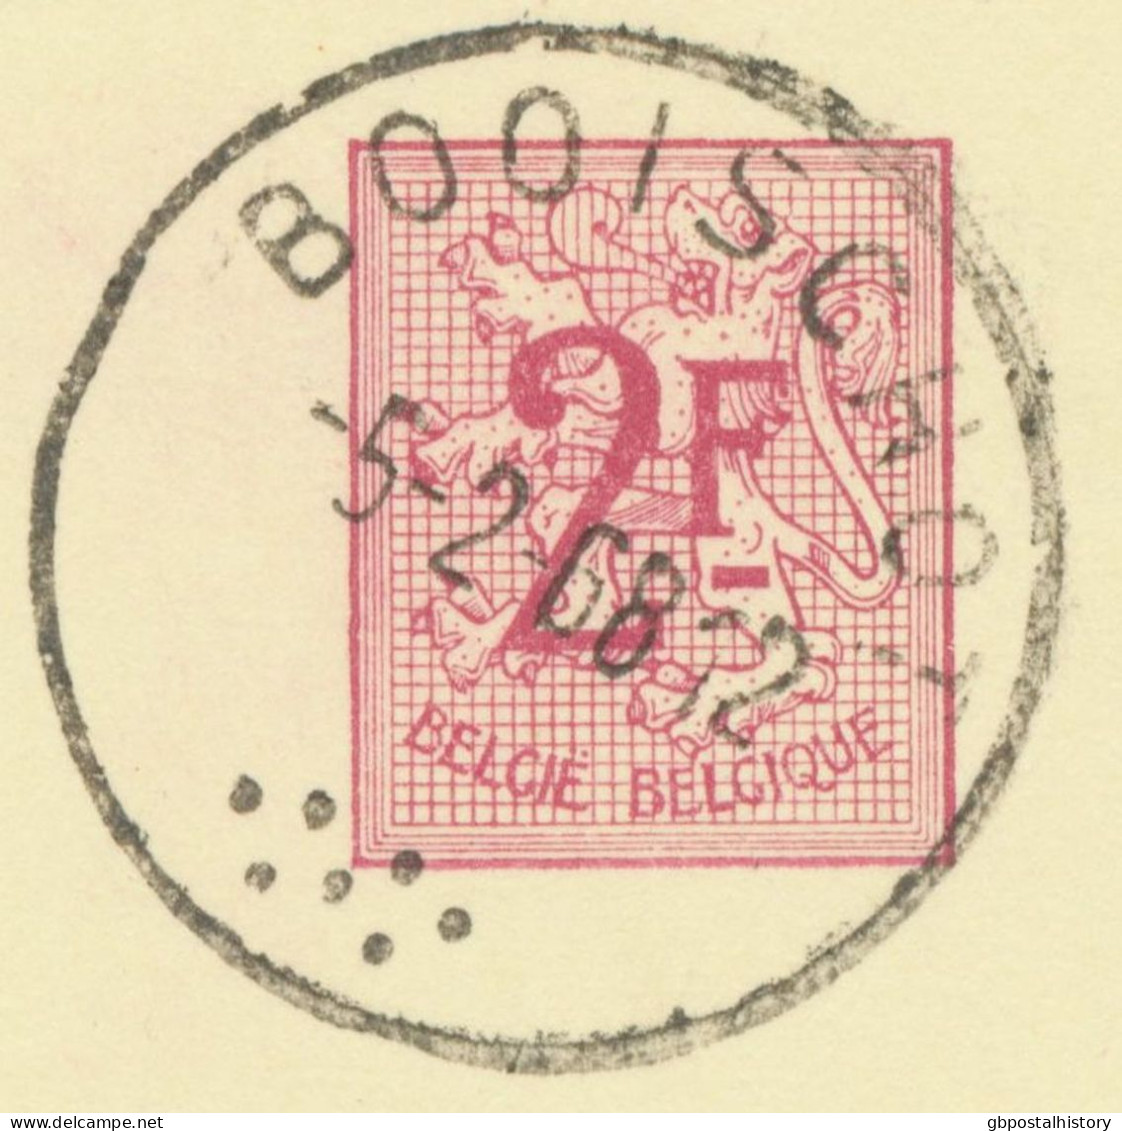 BELGIUM VILLAGE POSTMARKS  BOOISCHOT (now Heist-op-den-Berg) SC With Dots 1968 (Postal Stationery 2 F, PUBLIBEL 2237 V.) - Oblitérations à Points